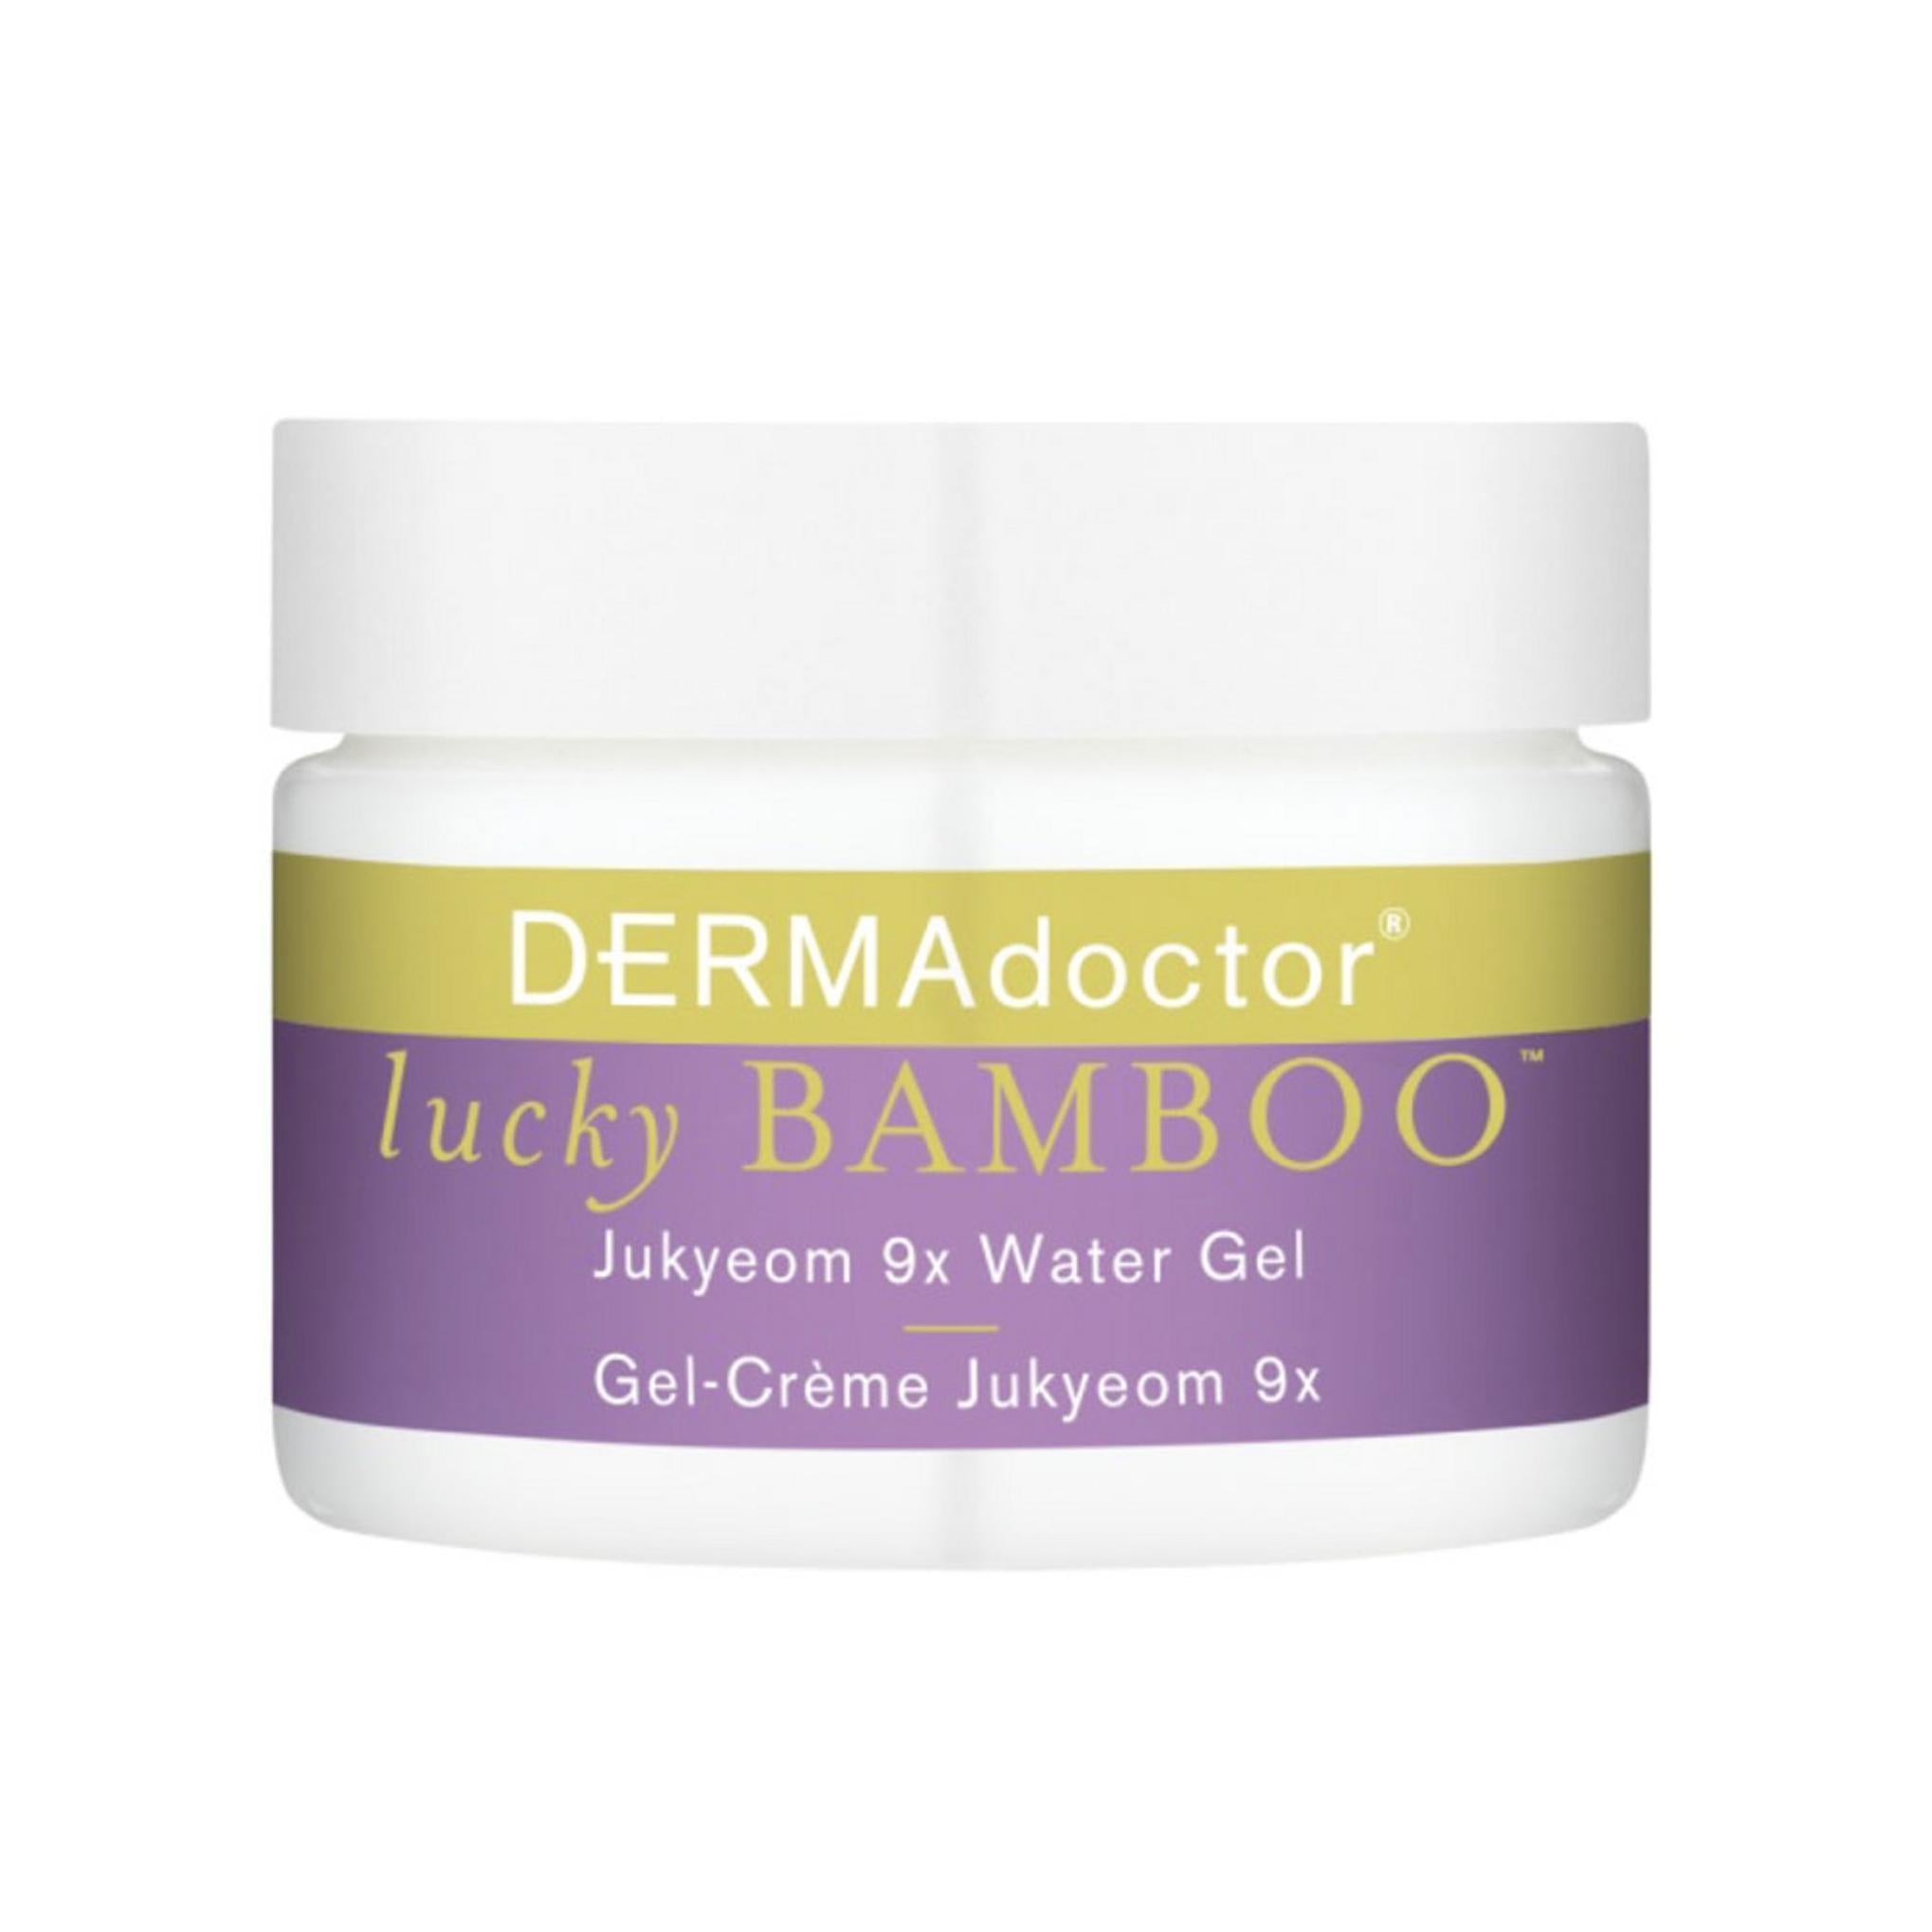 Derma Doctor Lucky Bamboo Salt 9X Water Gel